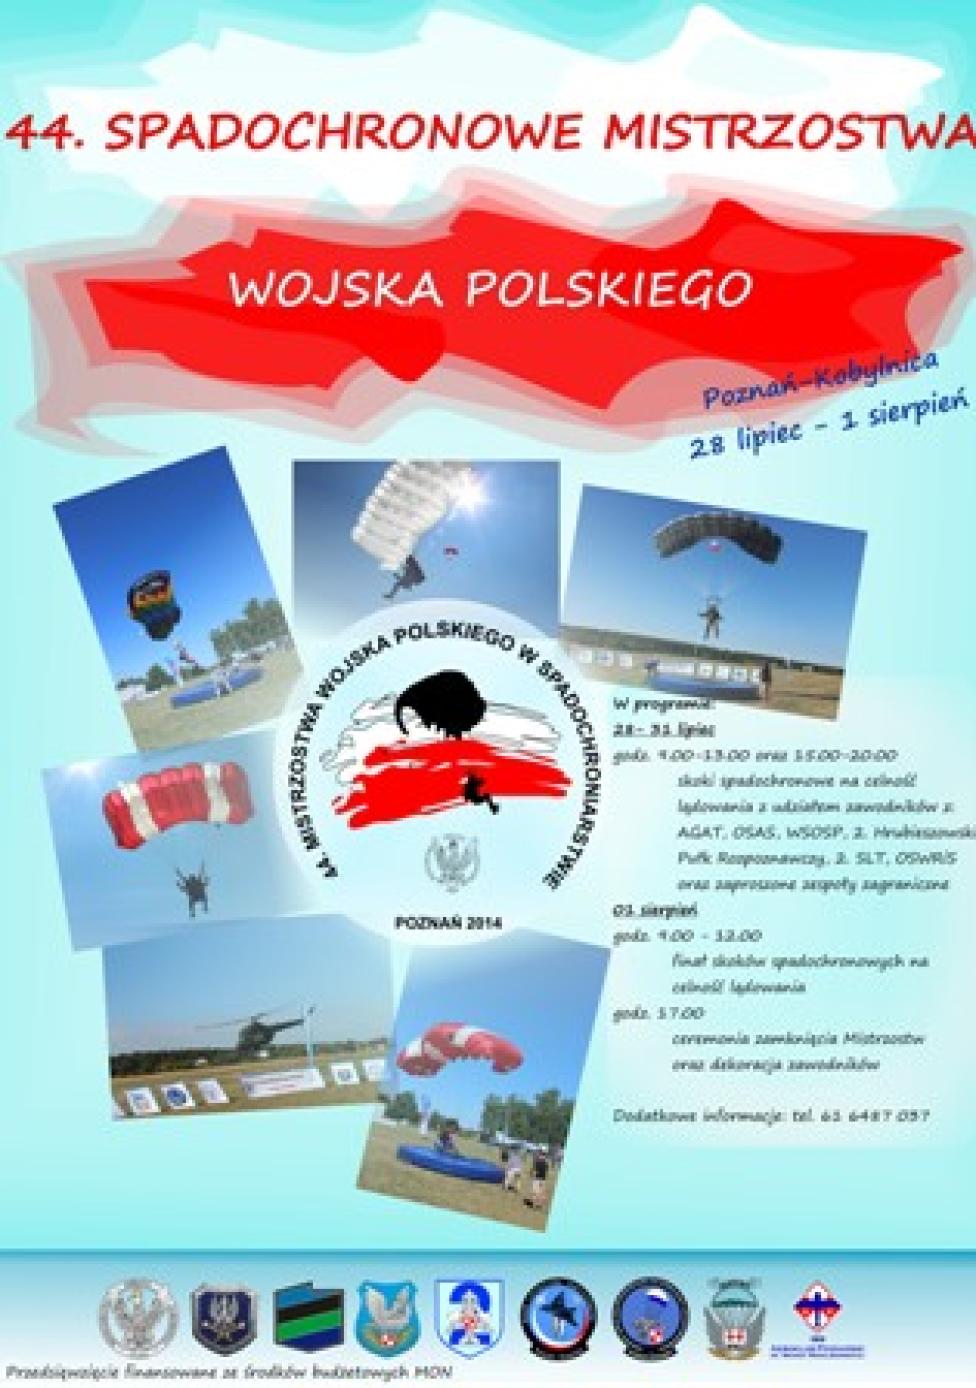 Spadochronowe Mistrzostwa Wojska Polskiego, Kobylnica